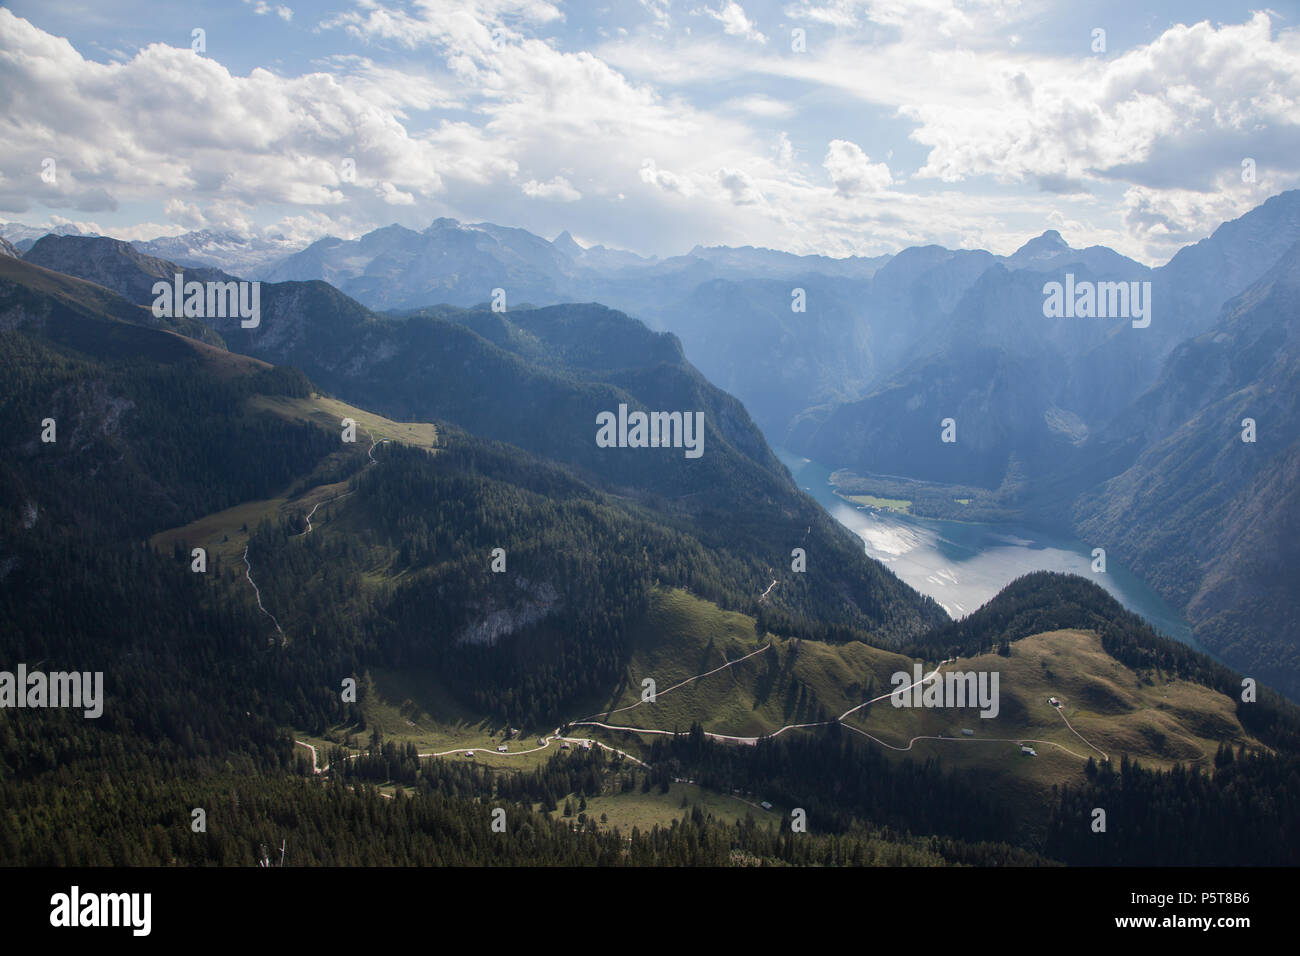 Bergpanorama mit Königssee, Berchtesgadener Land mit Ausblick vom Jenner auf den Watzmann und Königsee Stock Photo